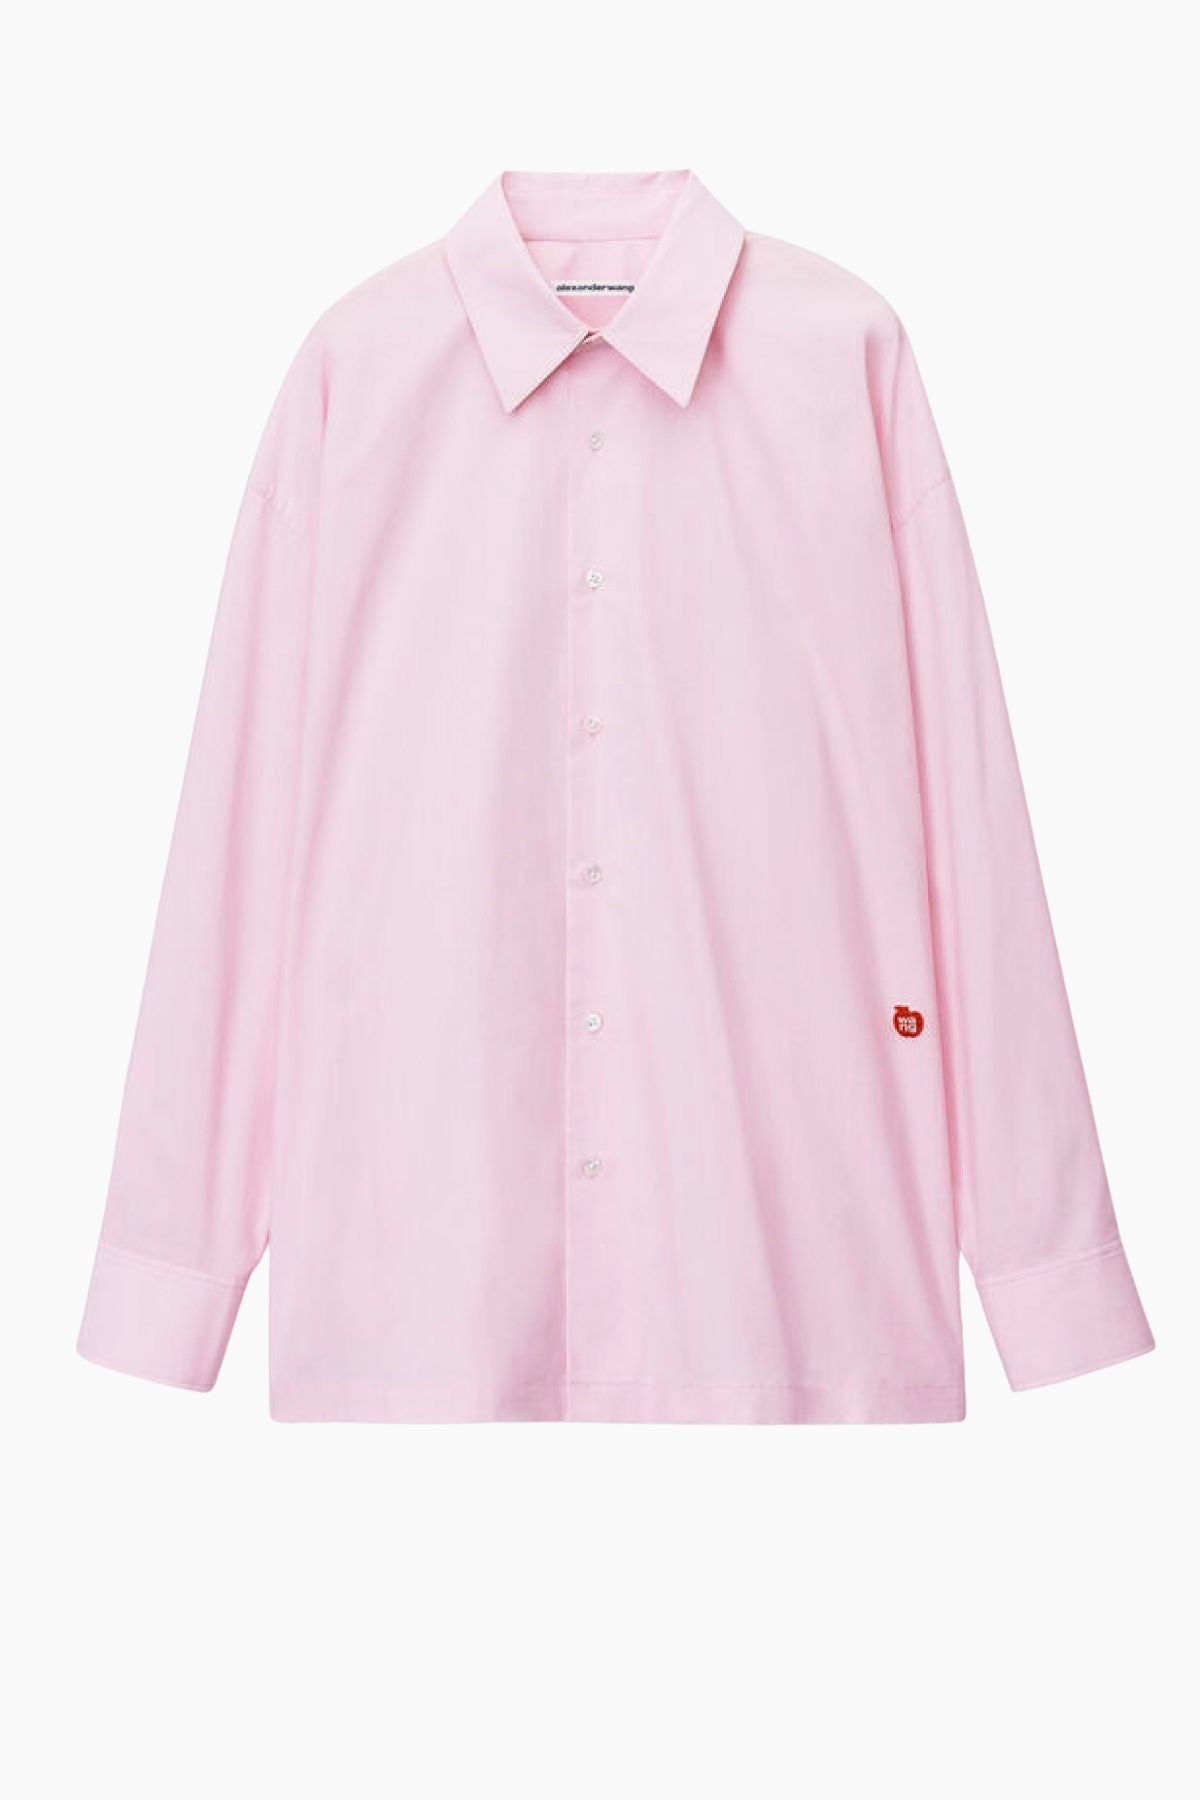 alexanderwang.t Logo Apple Patch Cotton Shirt - Light Pink